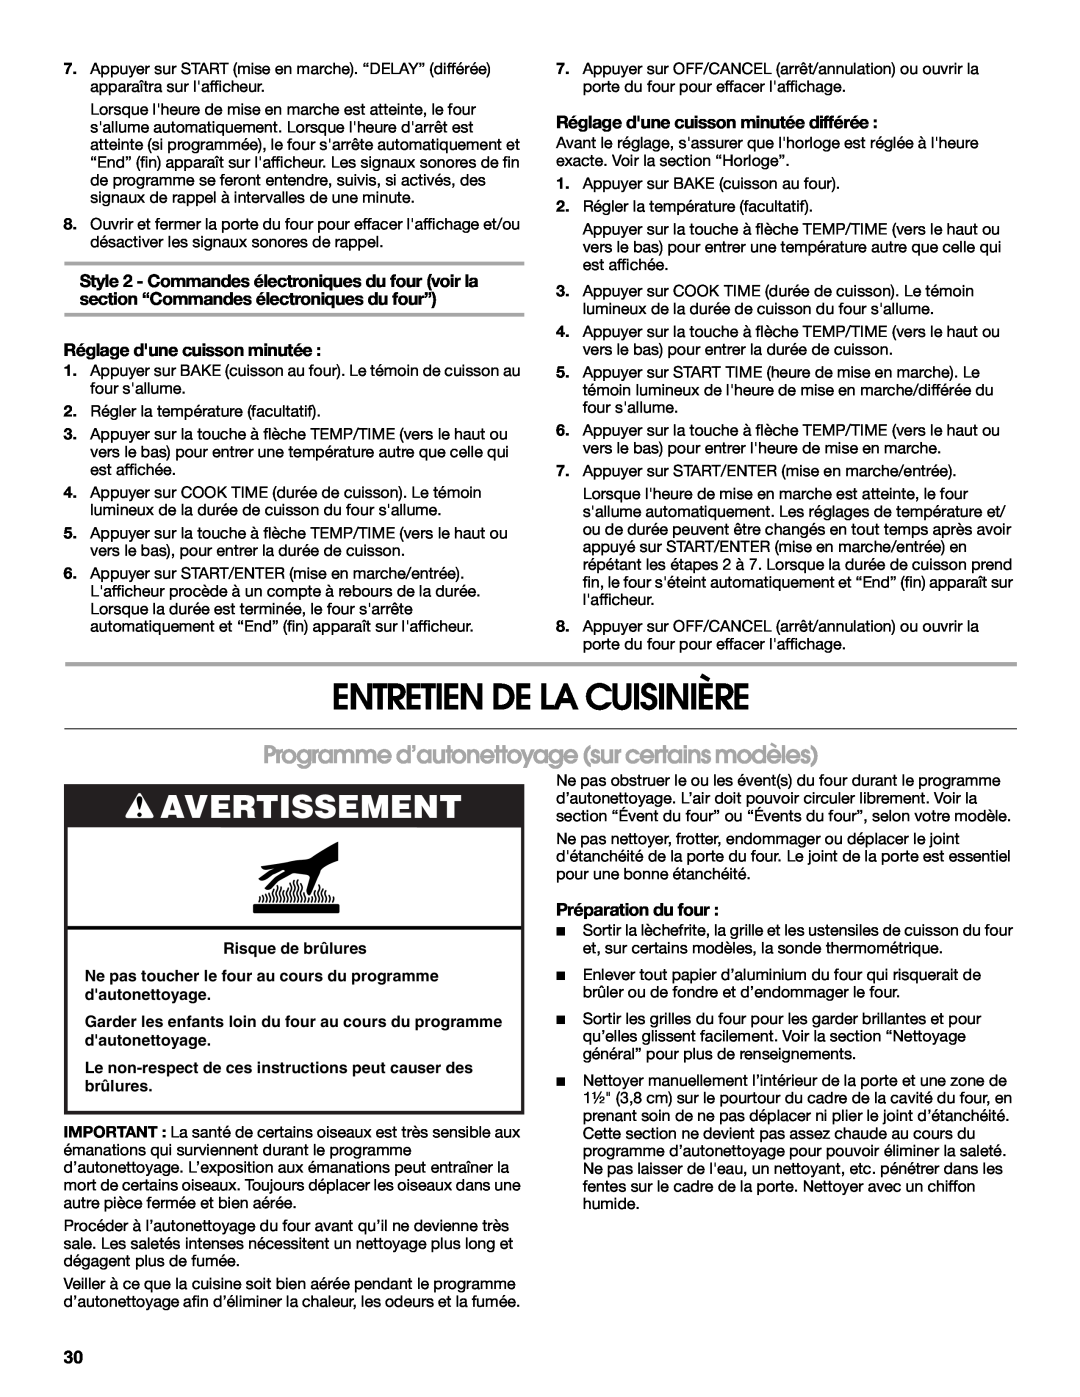 Whirlpool IGS365RS0 manual Entretien De La Cuisinière, Programme d’autonettoyage sur certains modèles, Avertissement 